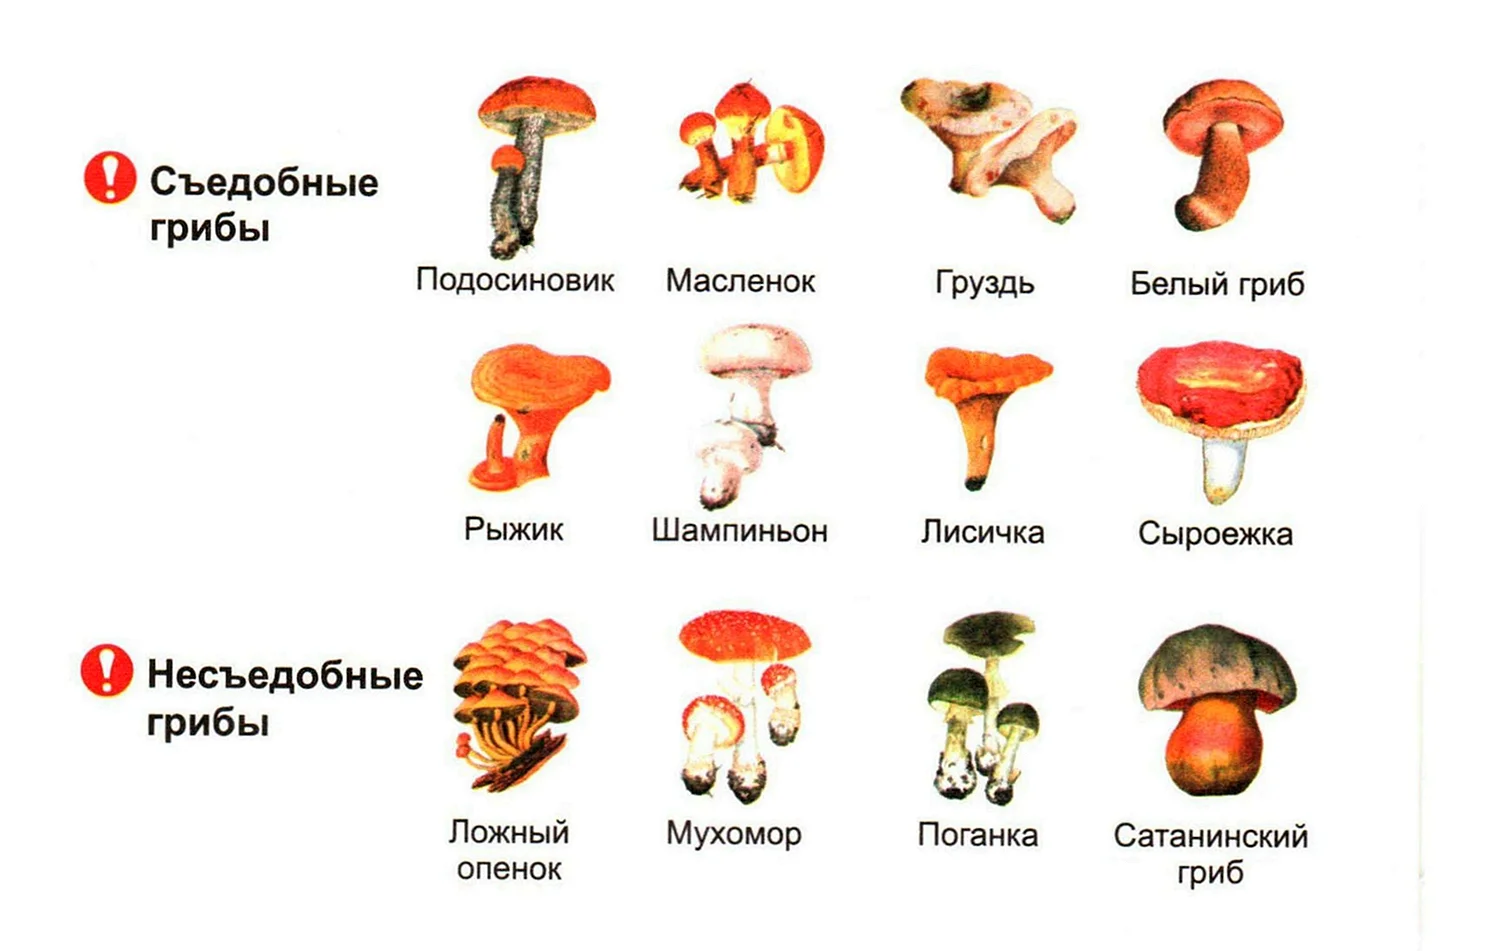 Съедобные грибы и несъедобные грибы